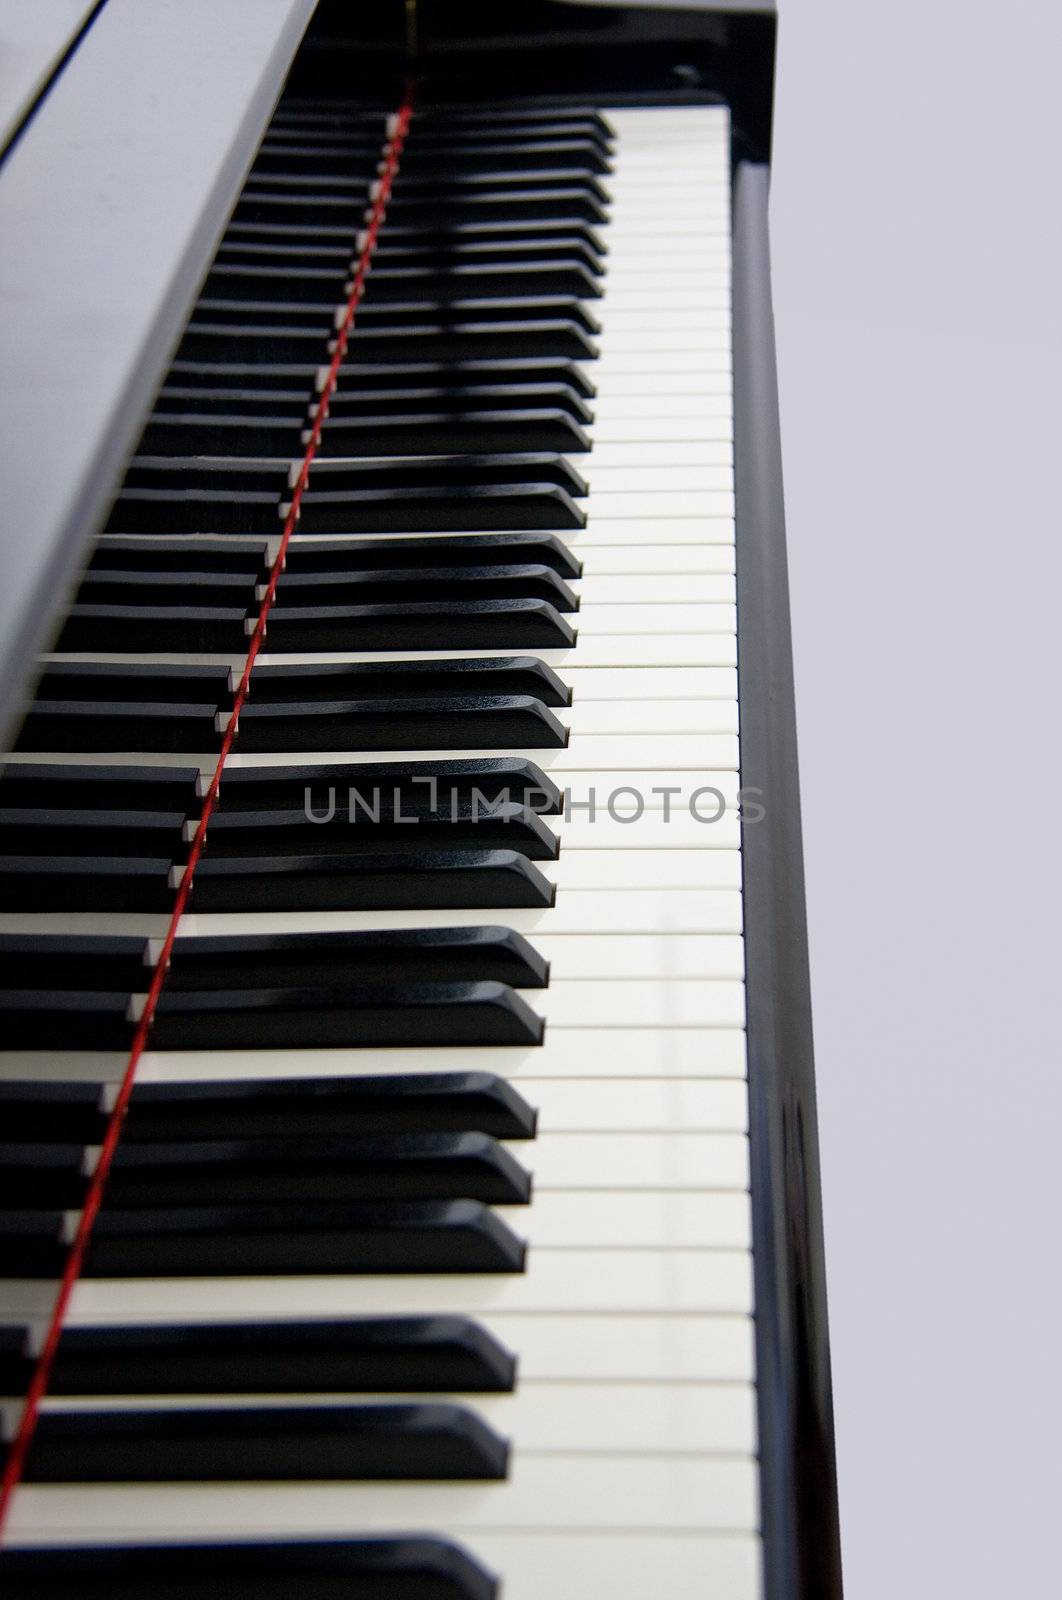 Close up of grand piano keyboard